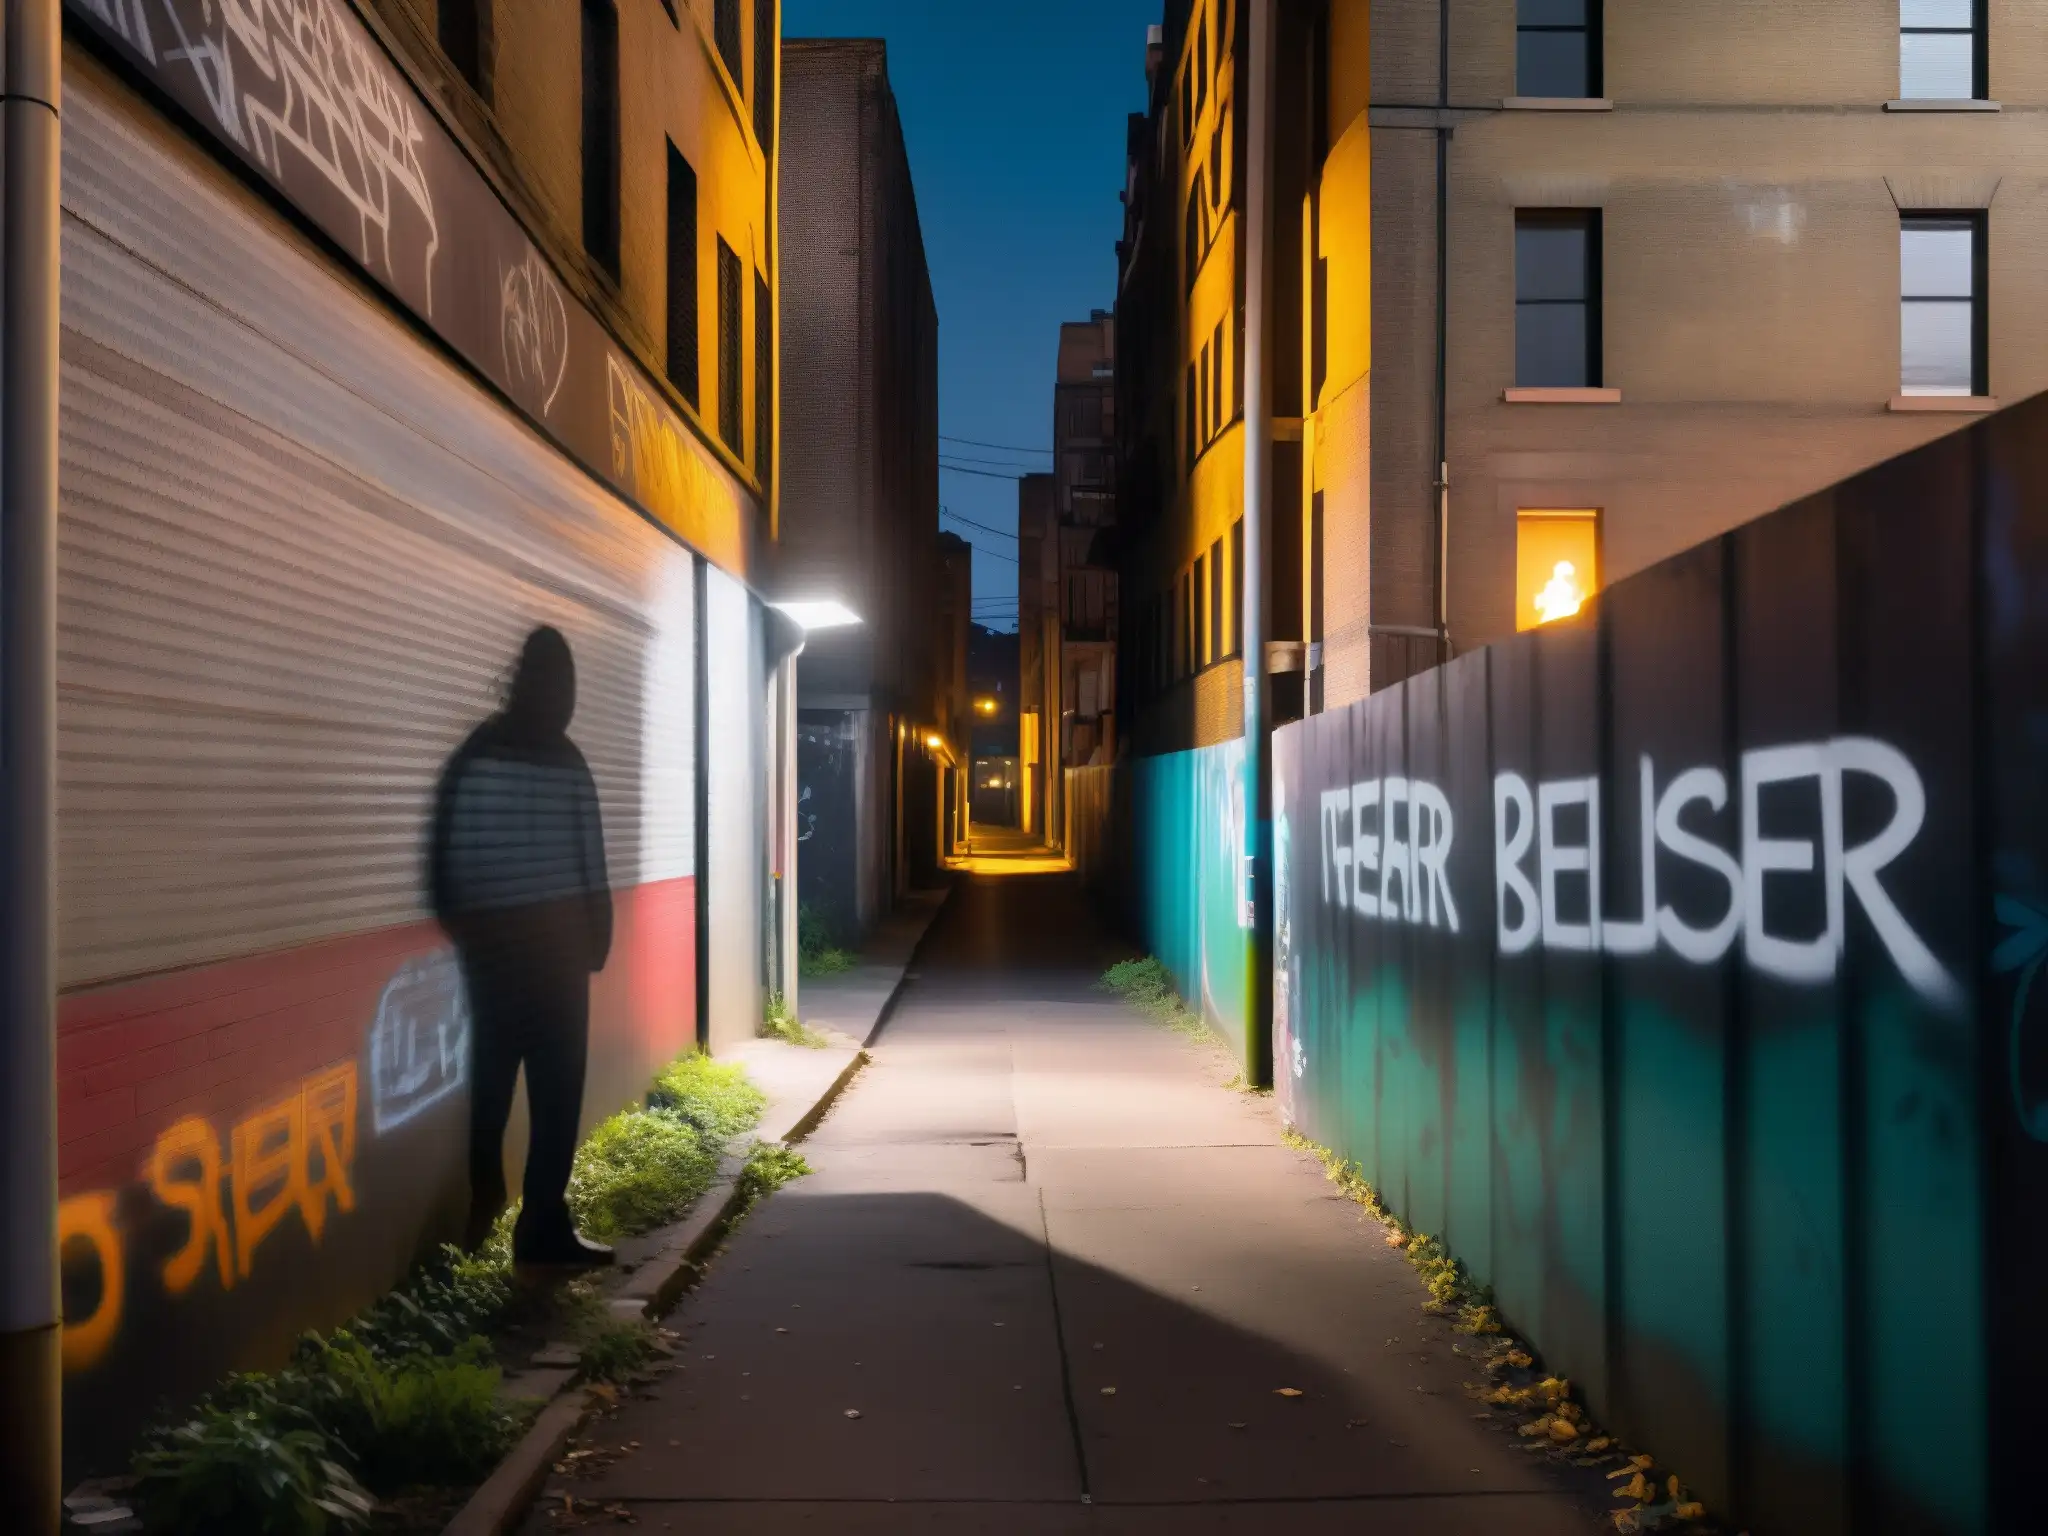 Un callejón sombrío en la noche, con una figura solitaria entre las sombras y grafitis en las paredes, evocando el misterio de las leyendas urbanas